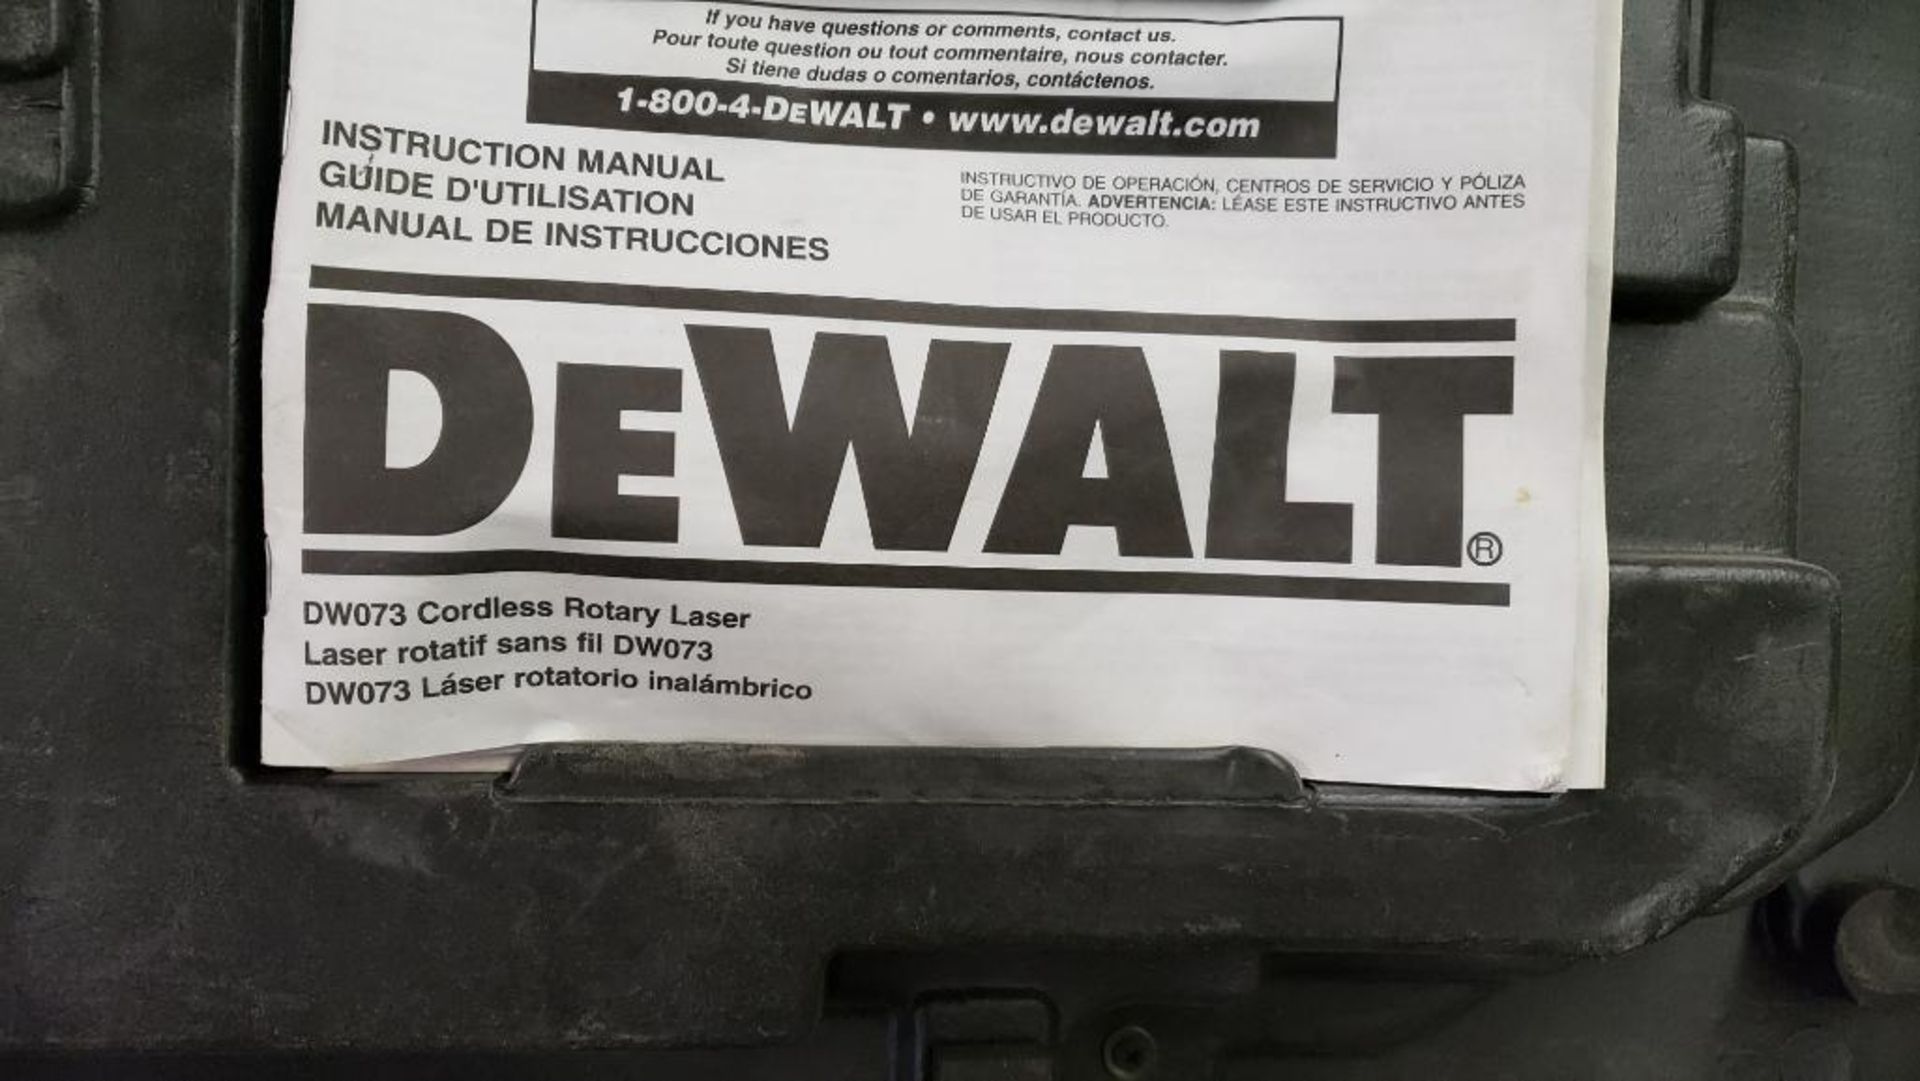 DeWalt DW073 cordless rotary laser, DW0732 digital laser detector. - Image 10 of 10